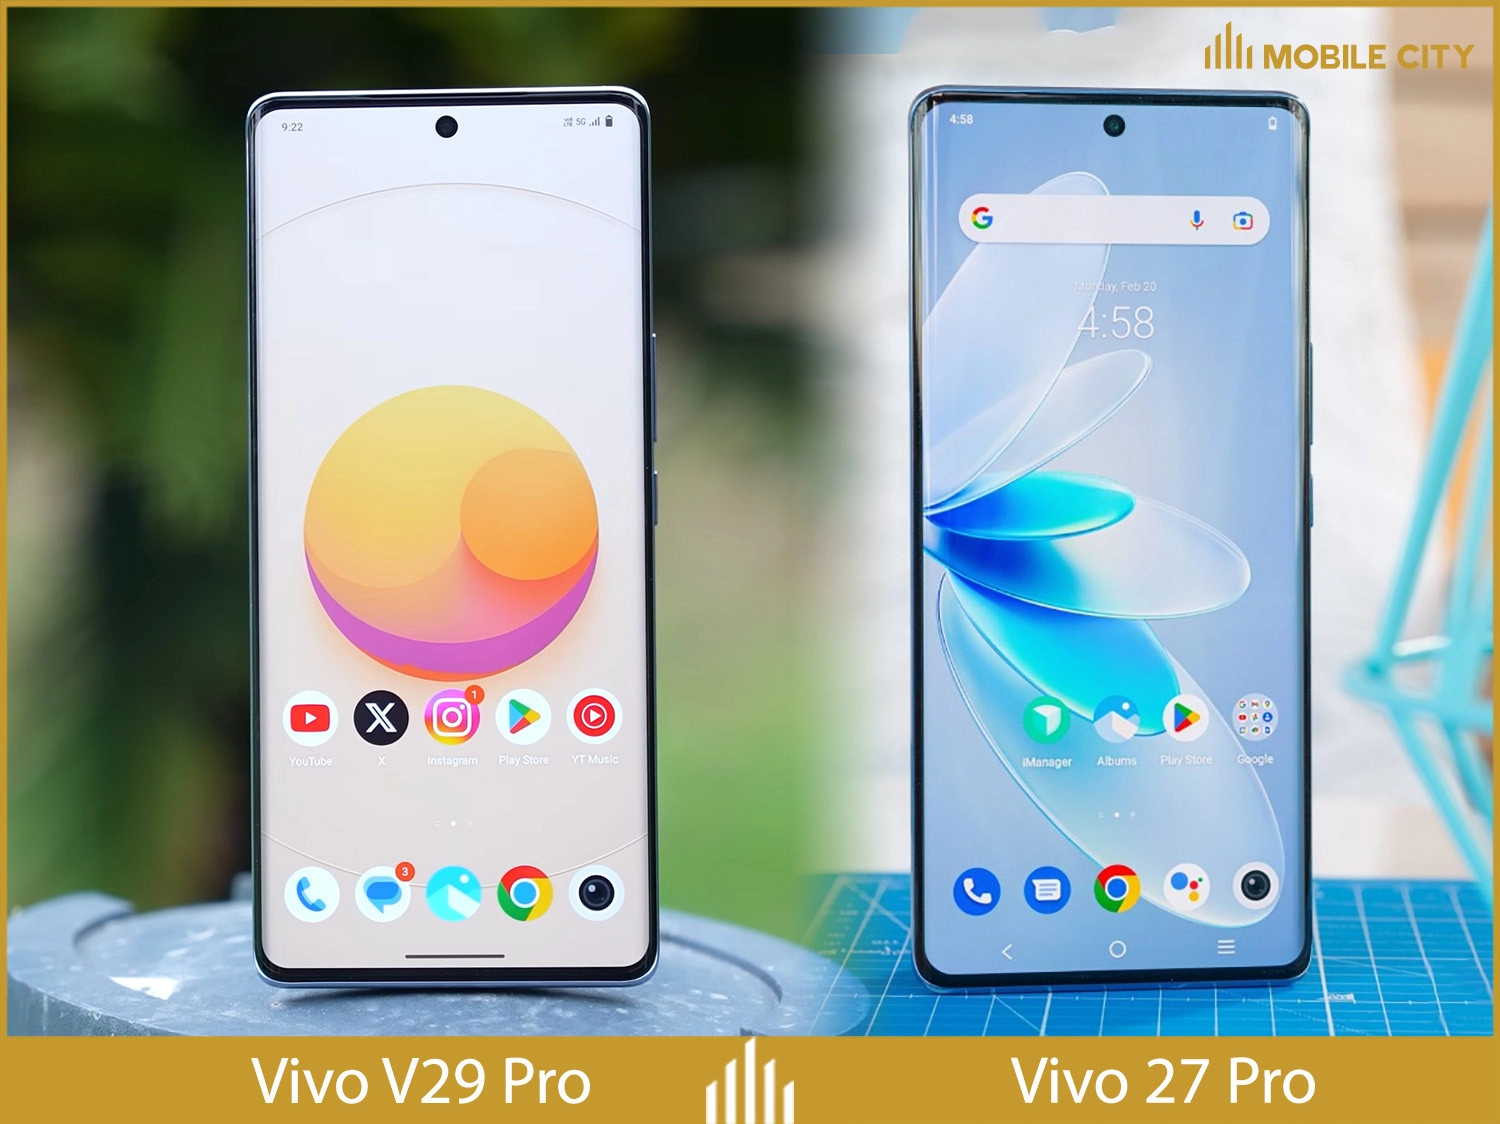  vivo-v29-pro-so-sanh-01